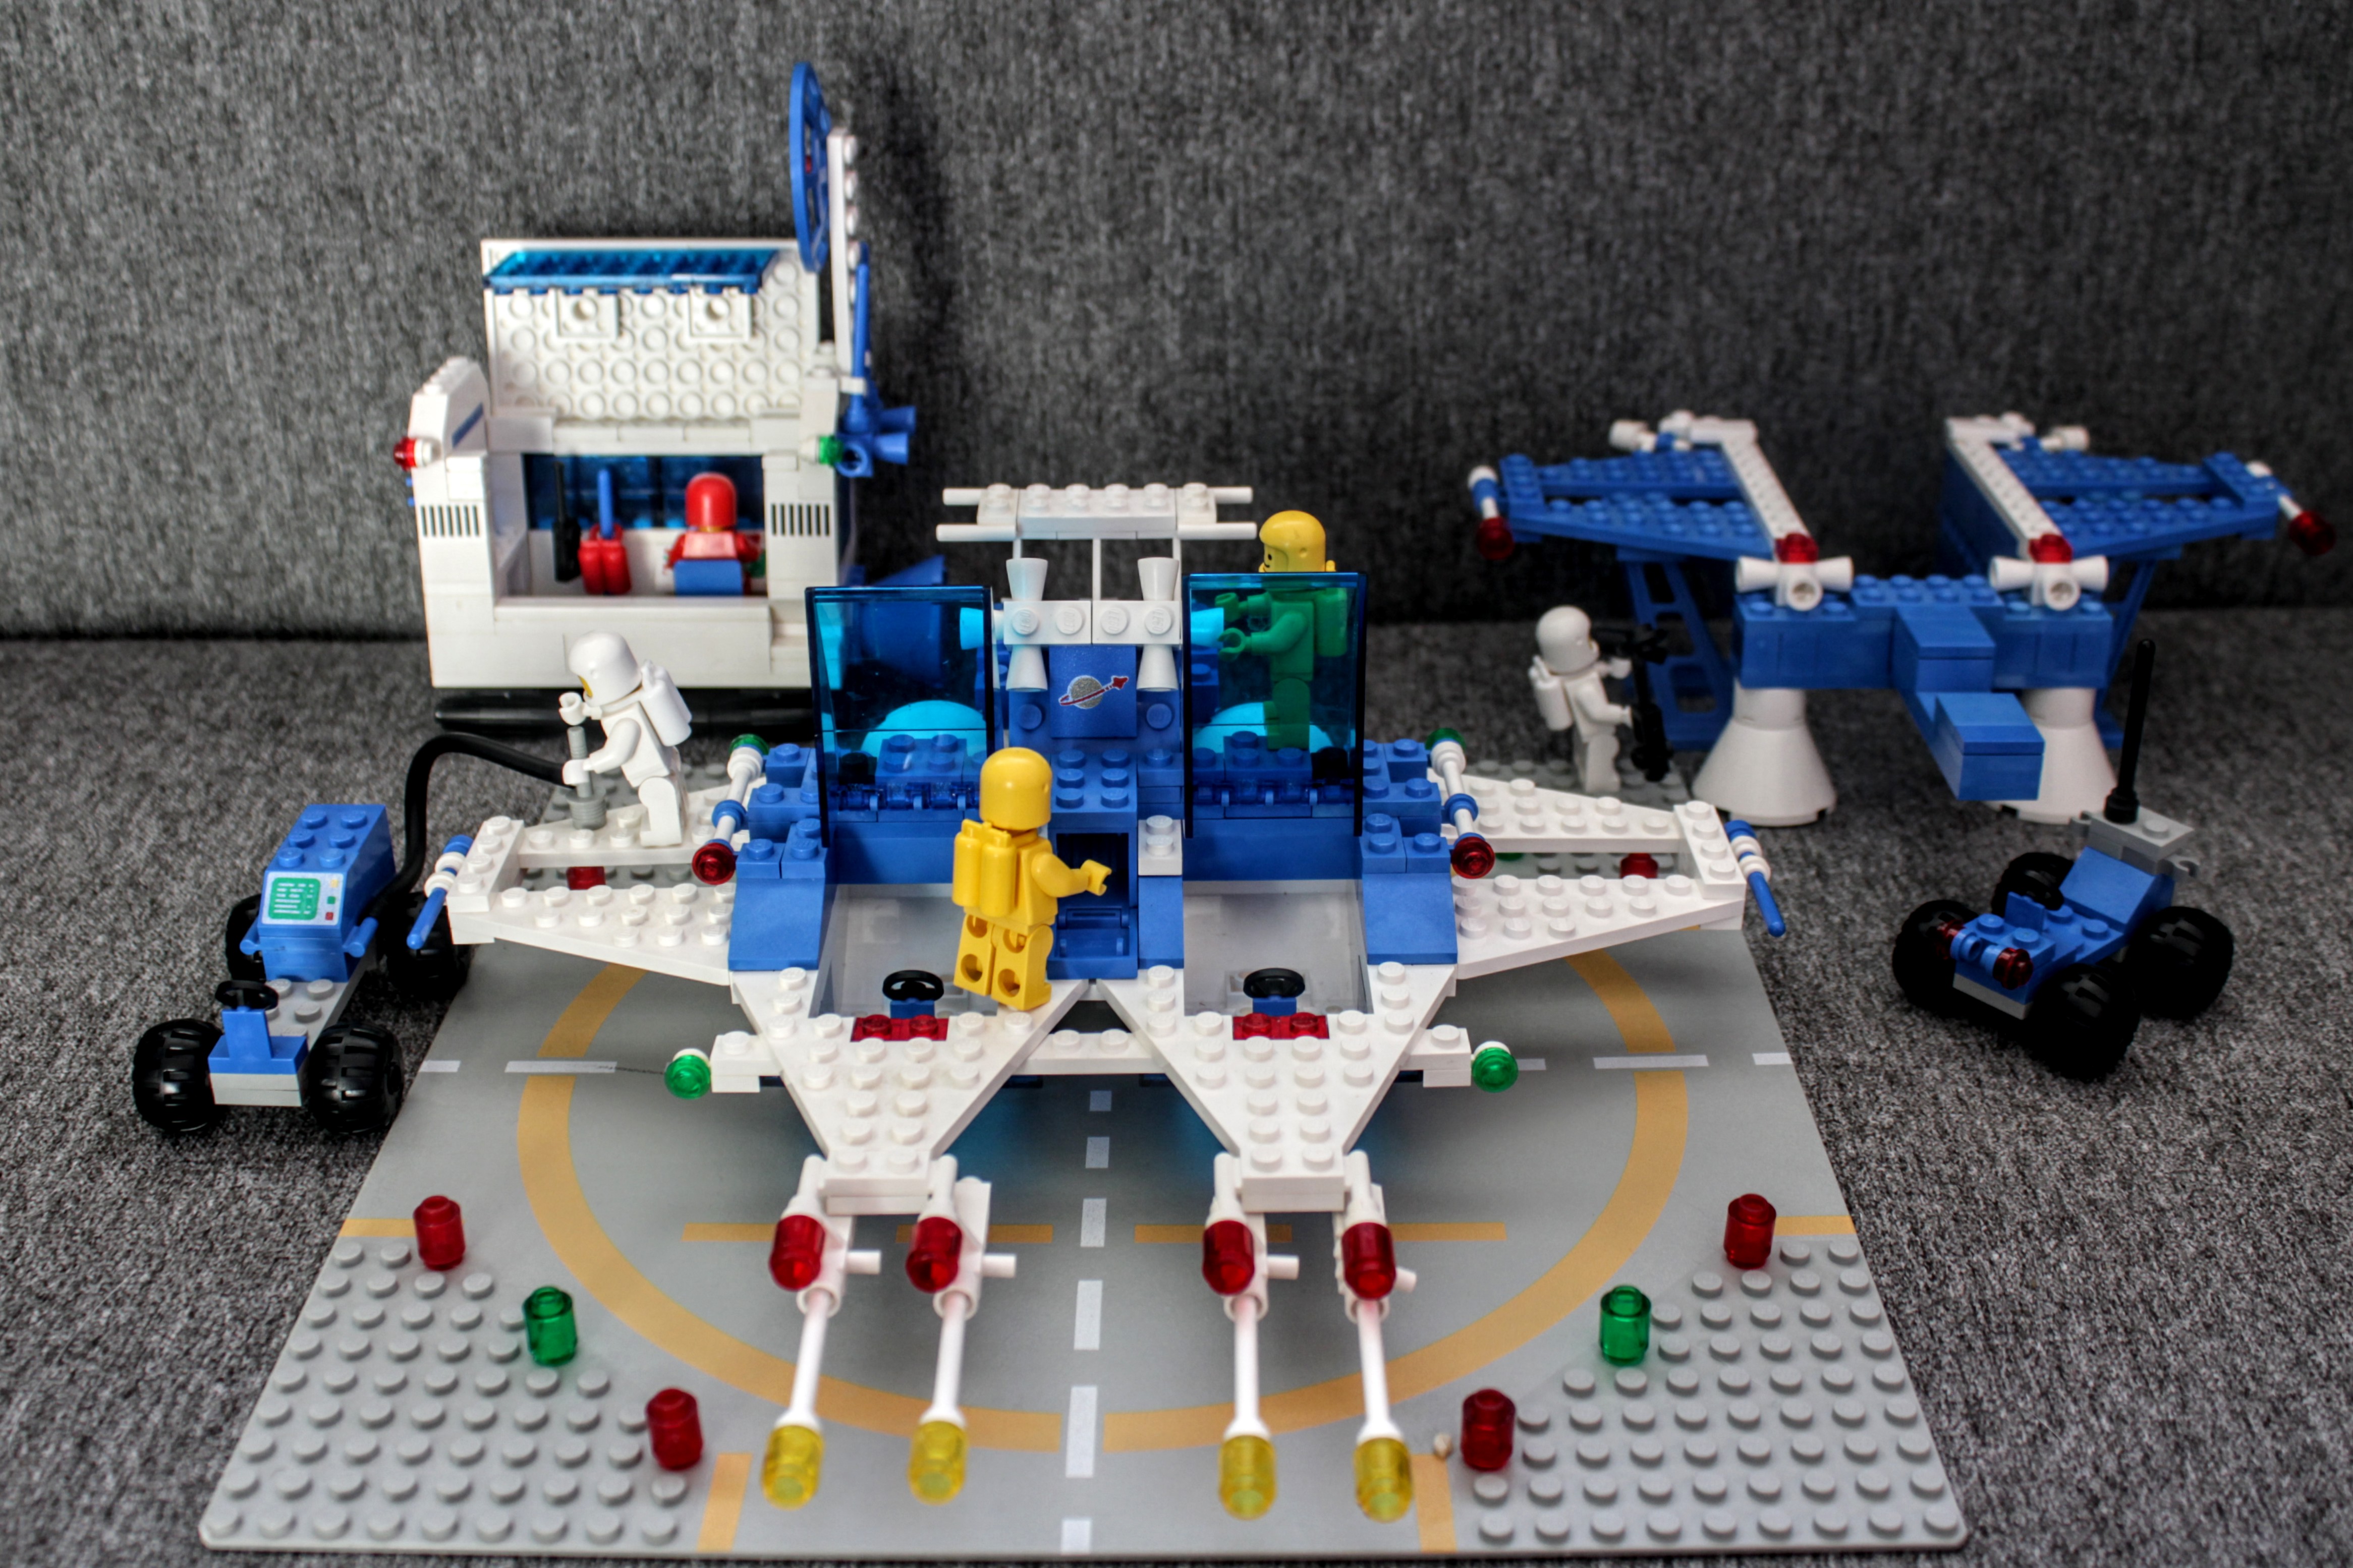 Interplanetarisches Raumschiff mit abkoppelbarem Raumlaboratorium, Rendezvous-Antenne, Flüssigsauerstoff-Tankfahrzeug, Radarwagen und Astronauten